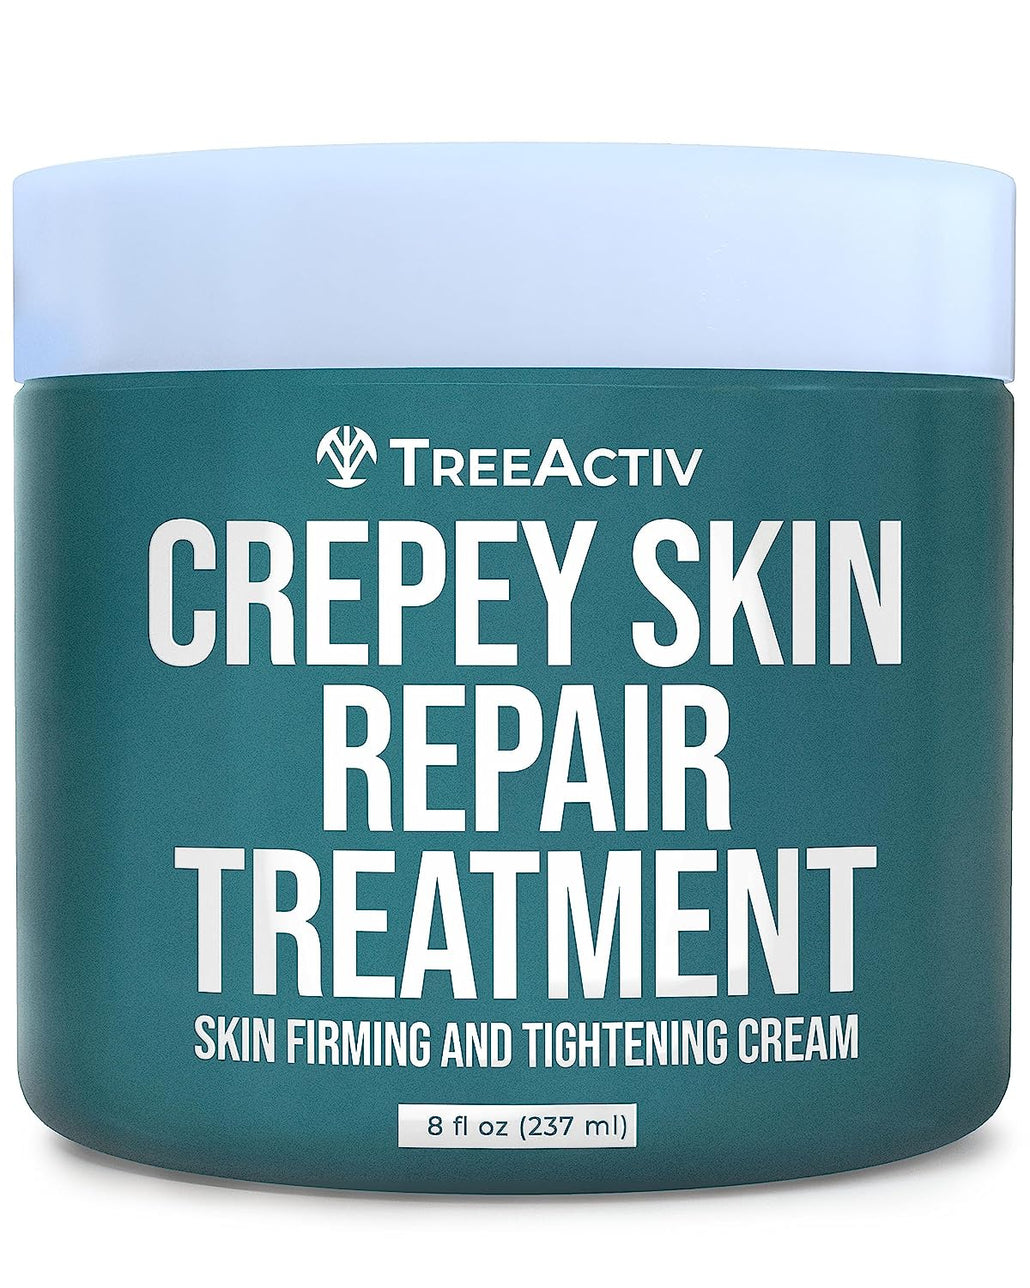 Crepey Skin Repair Treatment